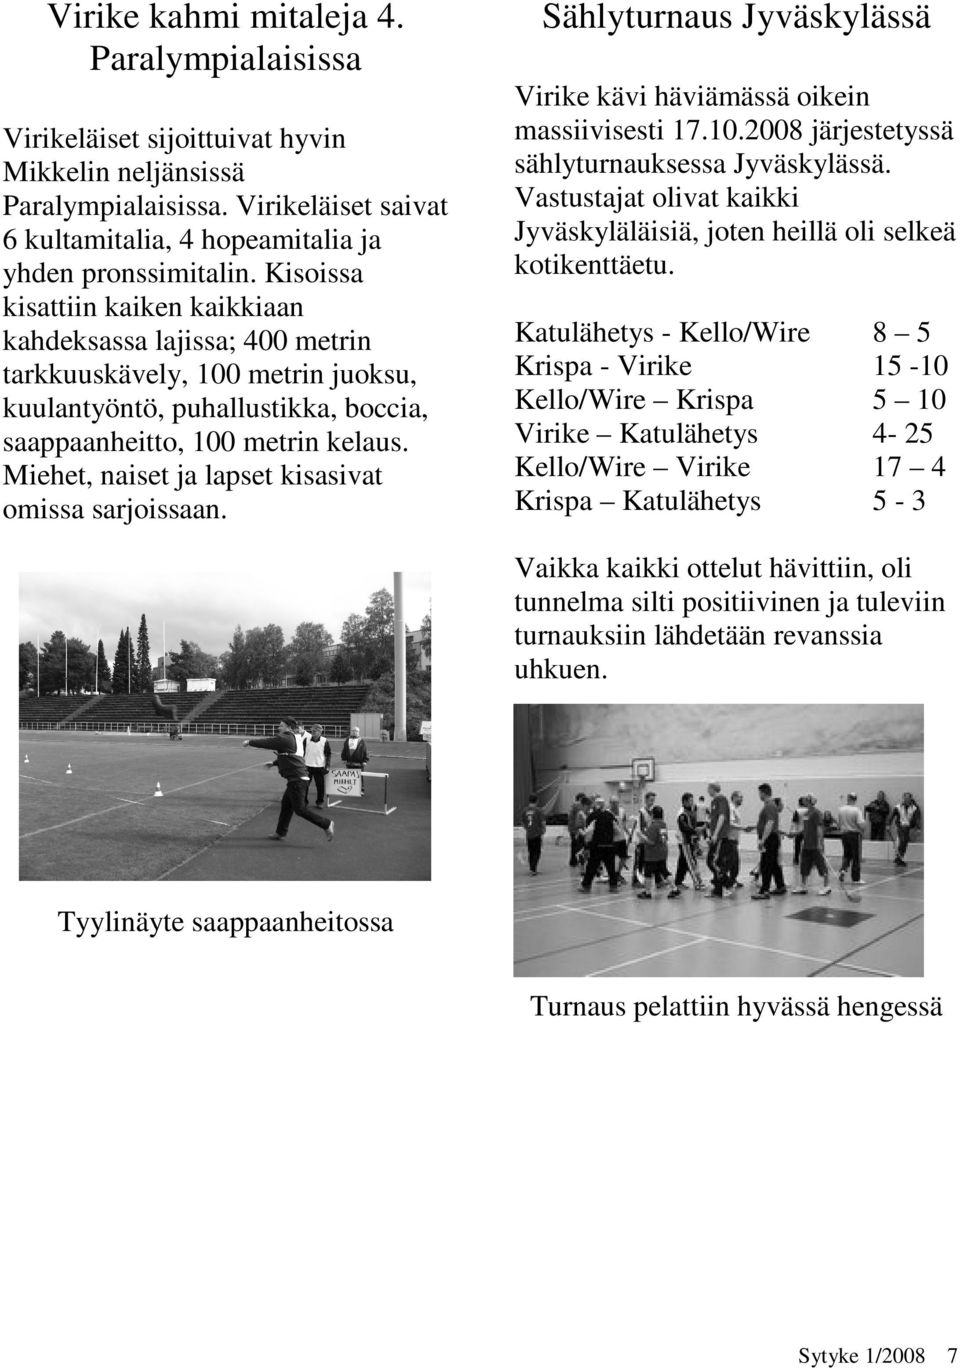 Miehet, naiset ja lapset kisasivat omissa sarjoissaan. Sählyturnaus Jyväskylässä Virike kävi häviämässä oikein massiivisesti 17.10.2008 järjestetyssä sählyturnauksessa Jyväskylässä.